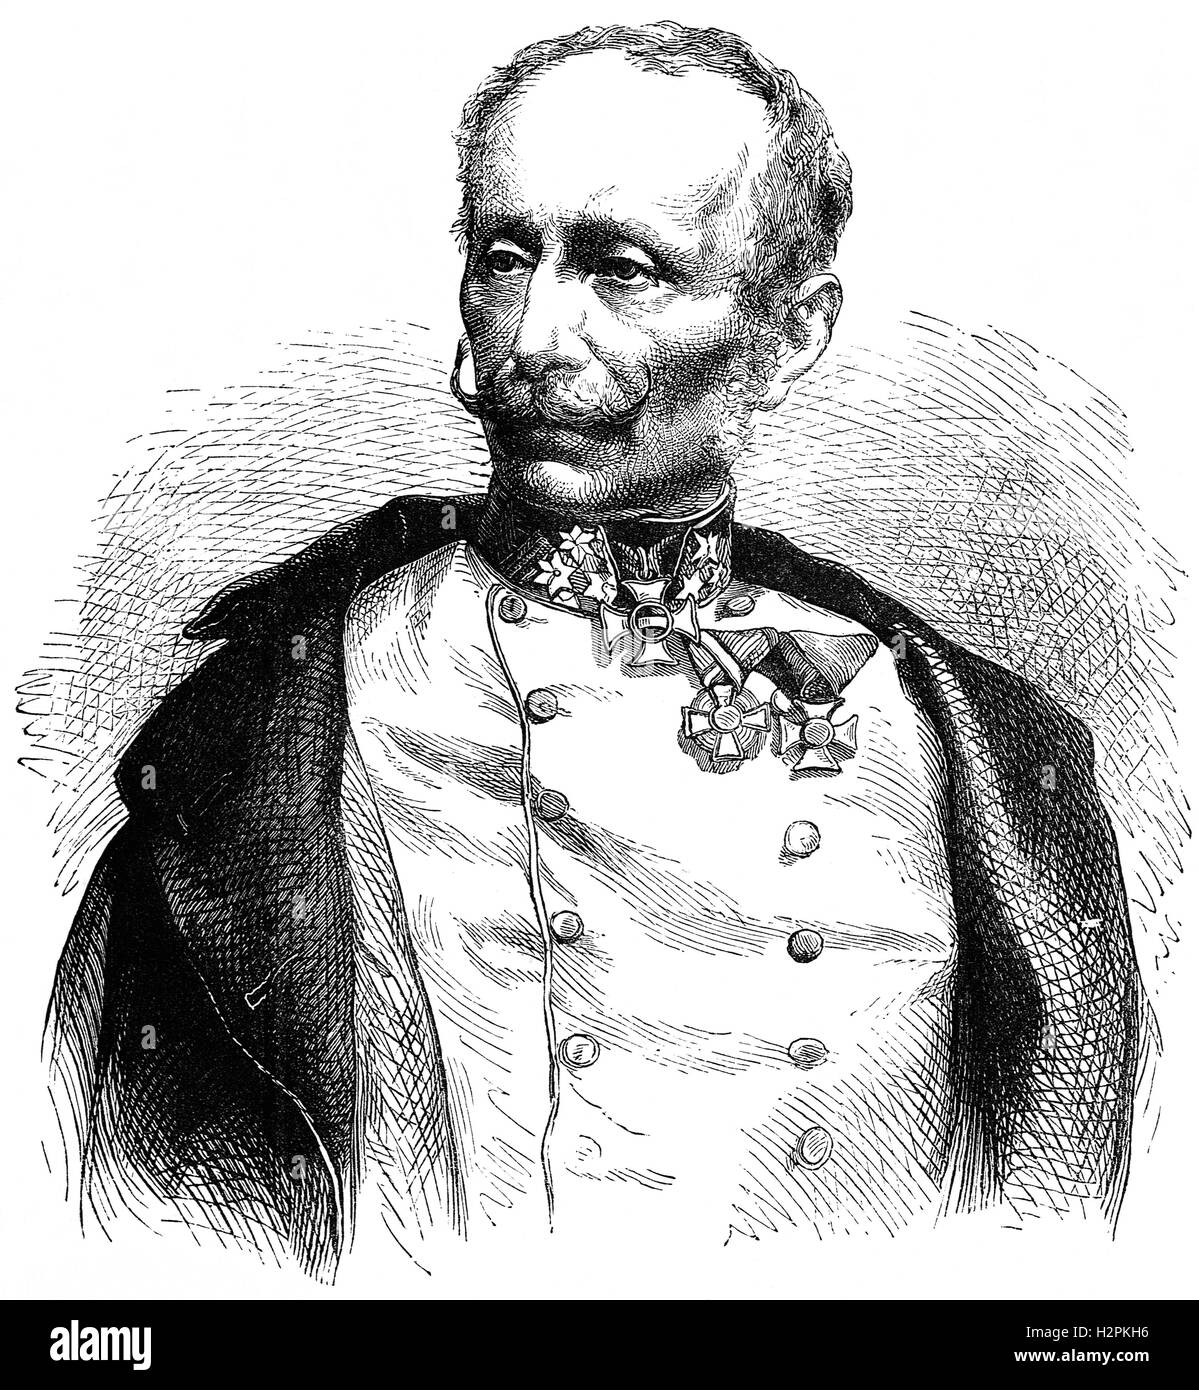 Ludwig August Ritter von Benedek (1804 – 1881) war ein österreichischer General (ungarischer Abstammung, am besten bekannt für Kommandeur der kaiserlichen Armee im Jahre 1866 in der Schlacht von Königgrätz gegen die preußische Armee. Nach einer Reihe von Fehlkalkulationen verlor er die Schlacht. Stockfoto